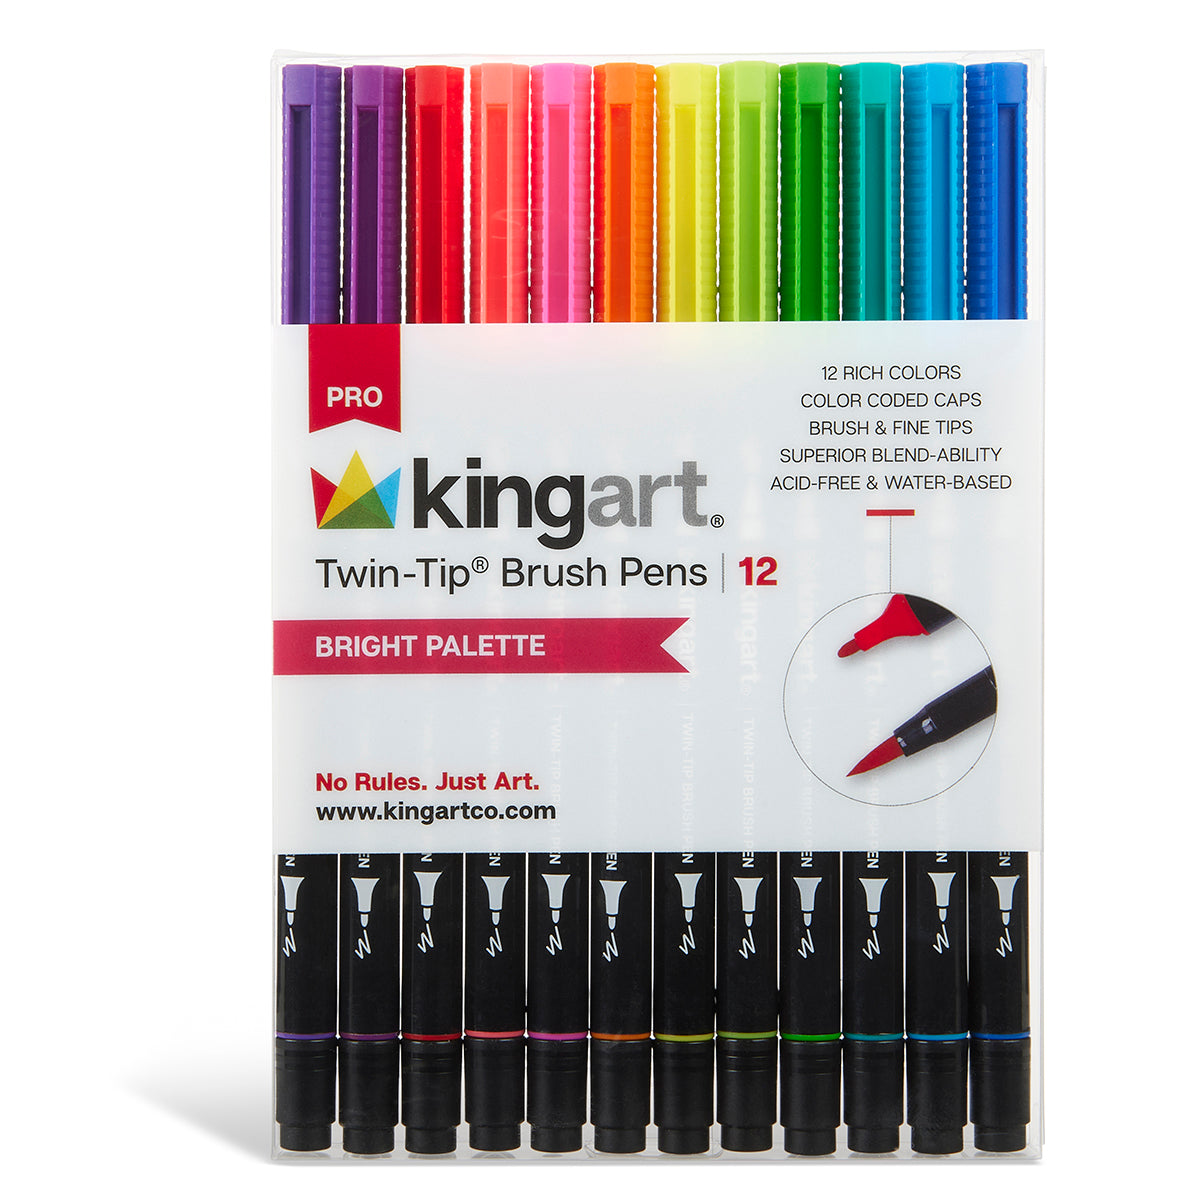 Kingart Watercolor Brush Markers - Set of 12 